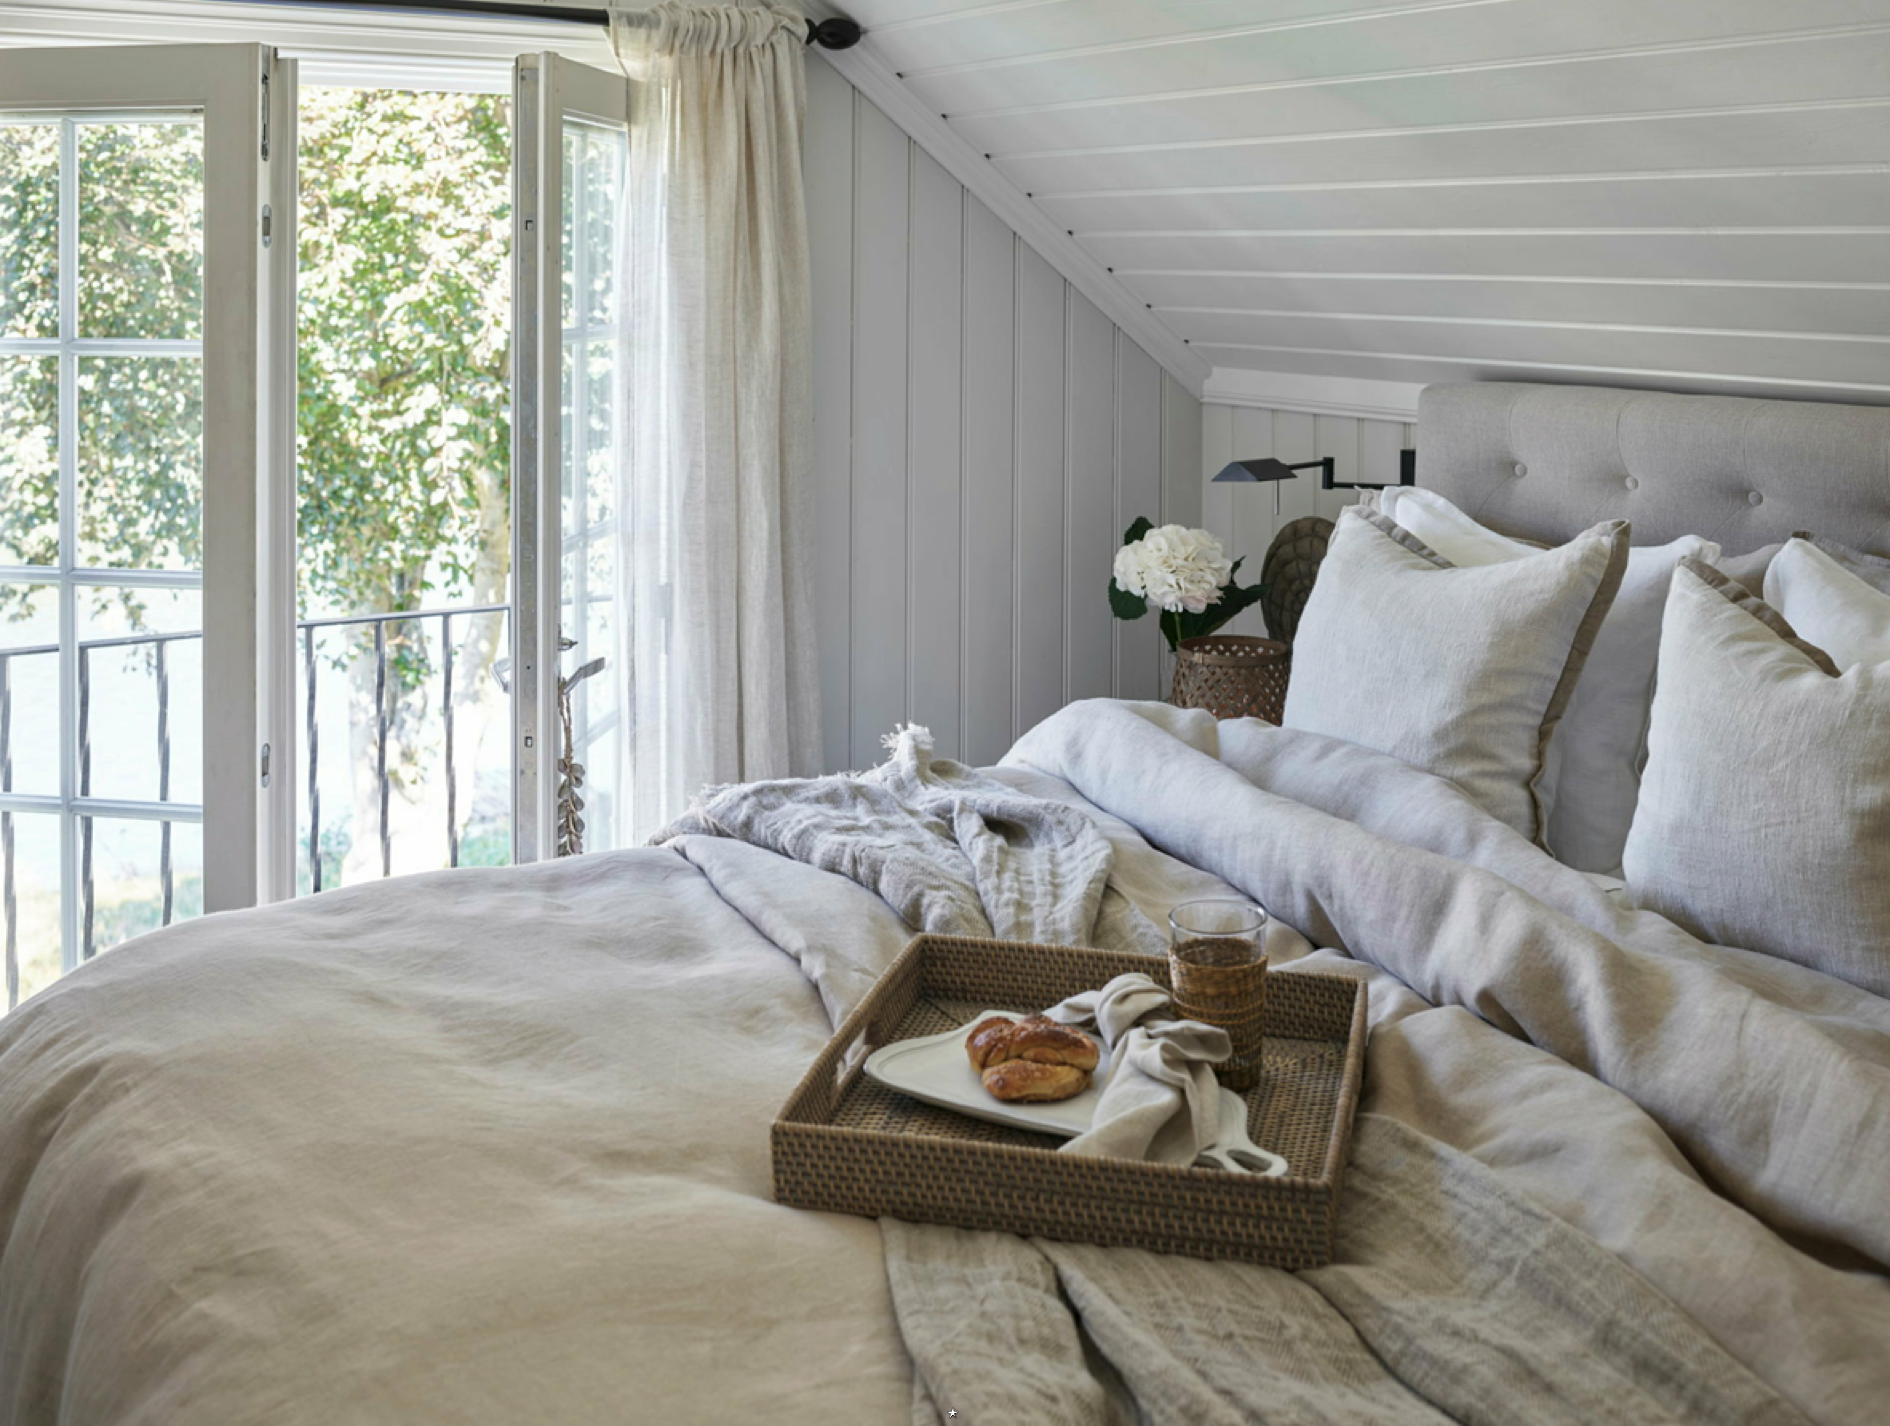 Svane seng på hytta